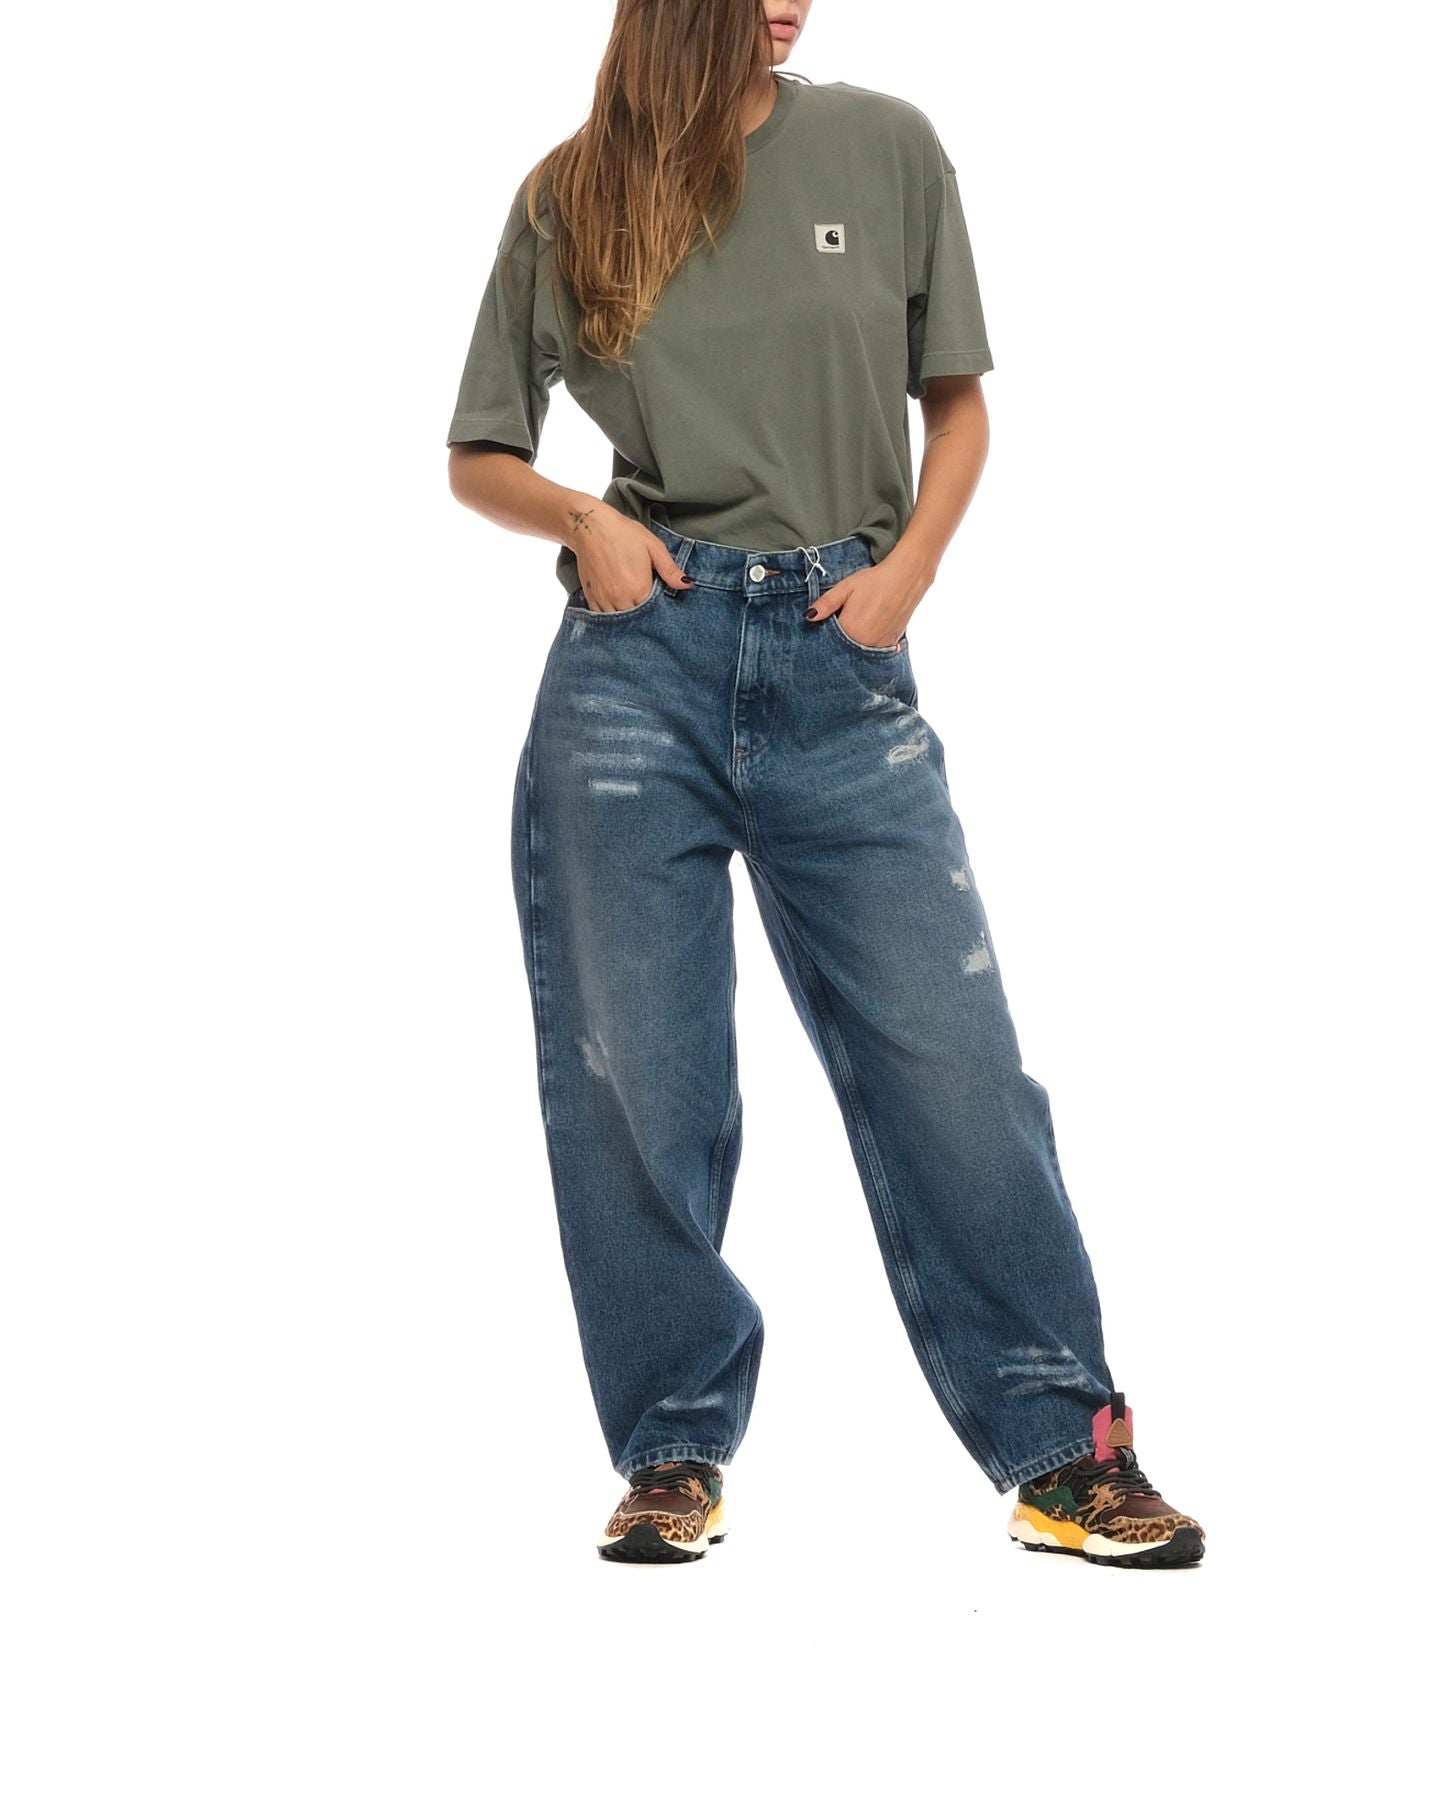 Jeans da donna AMD047D4352388 999 DENIM Amish